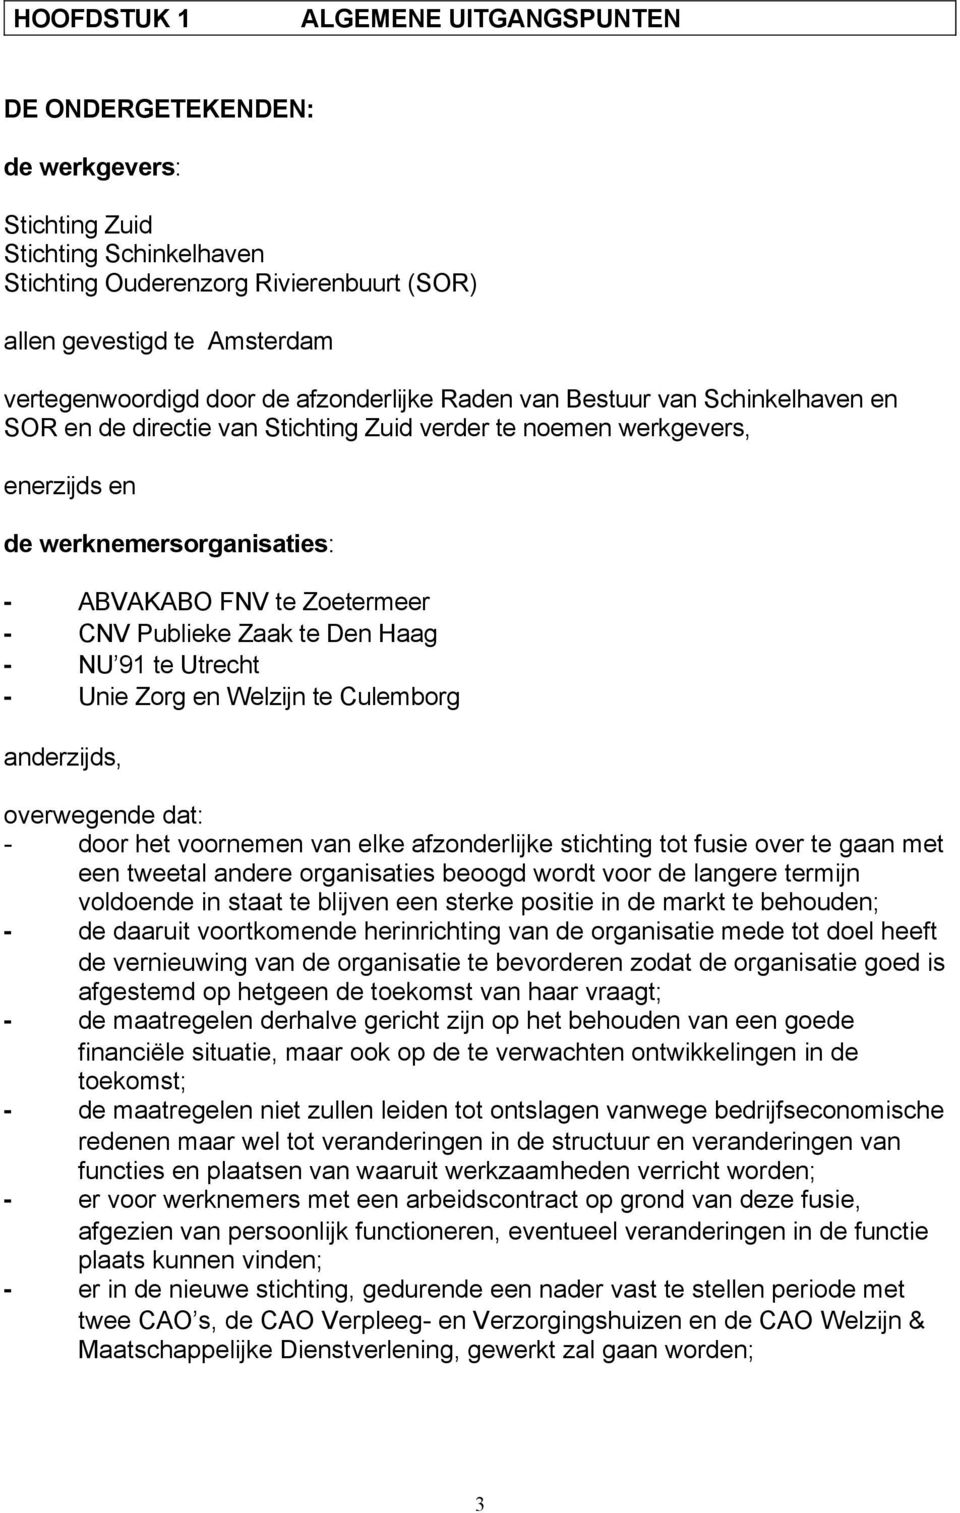 CNV Publieke Zaak te Den Haag - NU 91 te Utrecht - Unie Zorg en Welzijn te Culemborg anderzijds, overwegende dat: - door het voornemen van elke afzonderlijke stichting tot fusie over te gaan met een